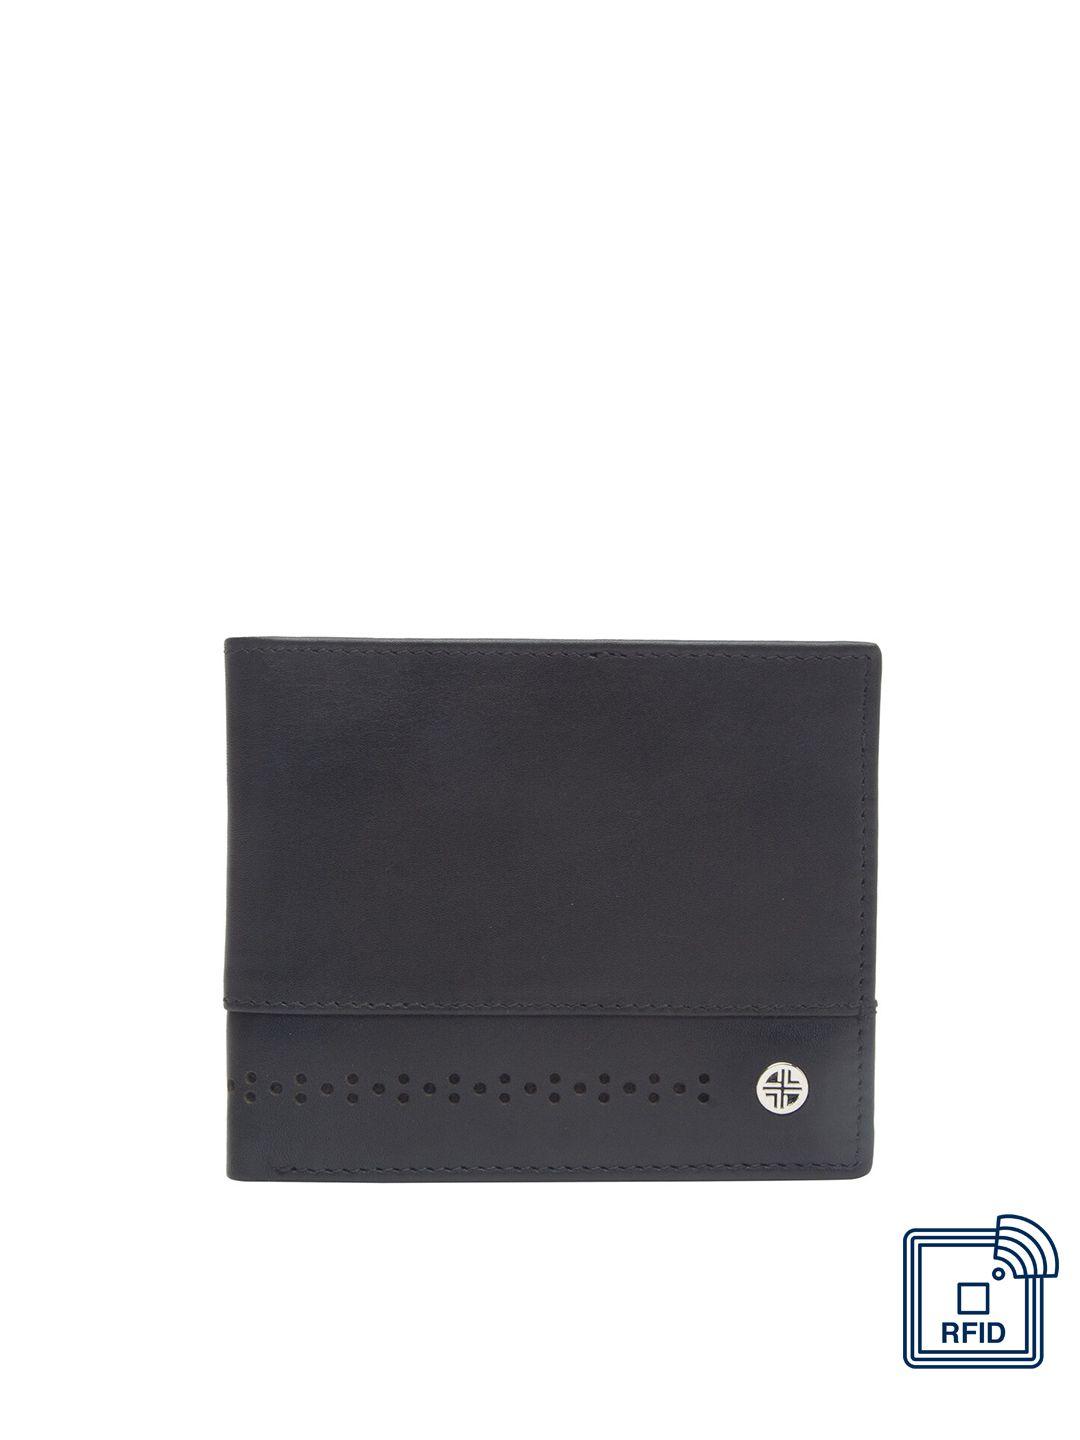 carlton london men black & pink leather two fold wallet